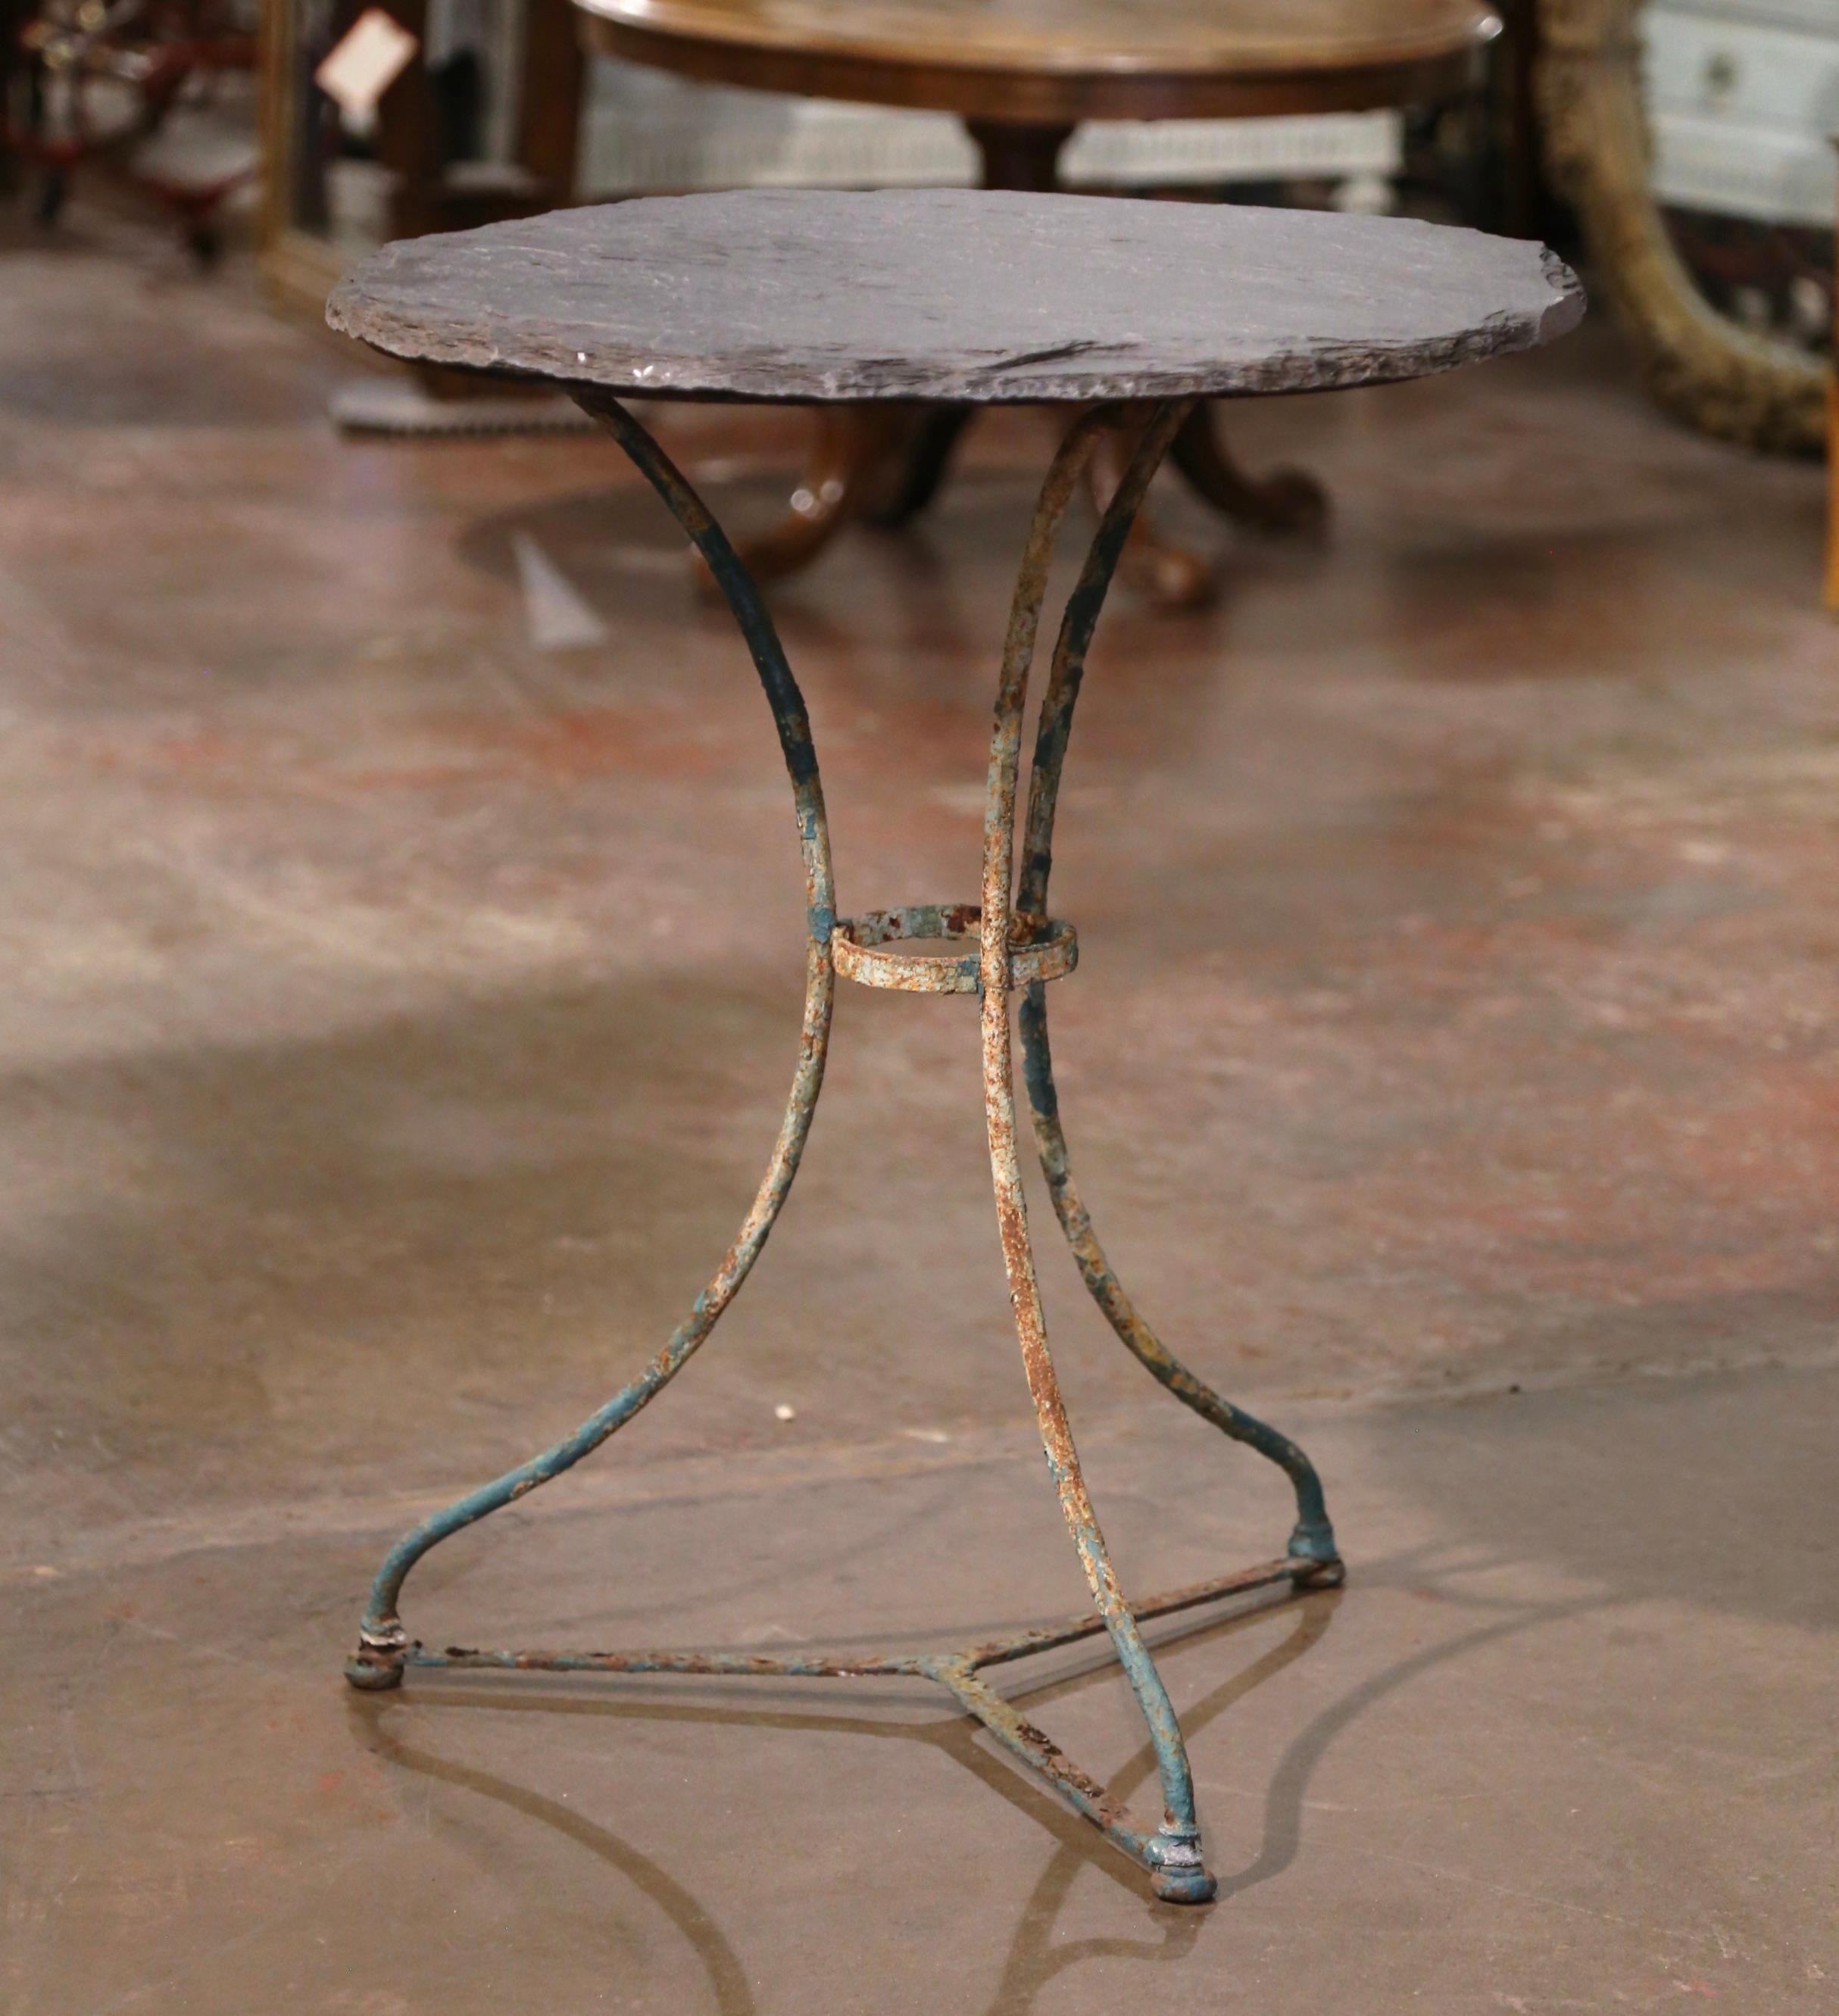 Dekorieren Sie eine Terrasse oder eine überdachte Veranda mit diesem eleganten antiken runden Bistrot-Tisch. Der um 1870 in Frankreich gefertigte Tisch aus Gusseisen steht auf drei mit einer runden Bahre verbundenen Schneckenbeinen. Die Tischplatte